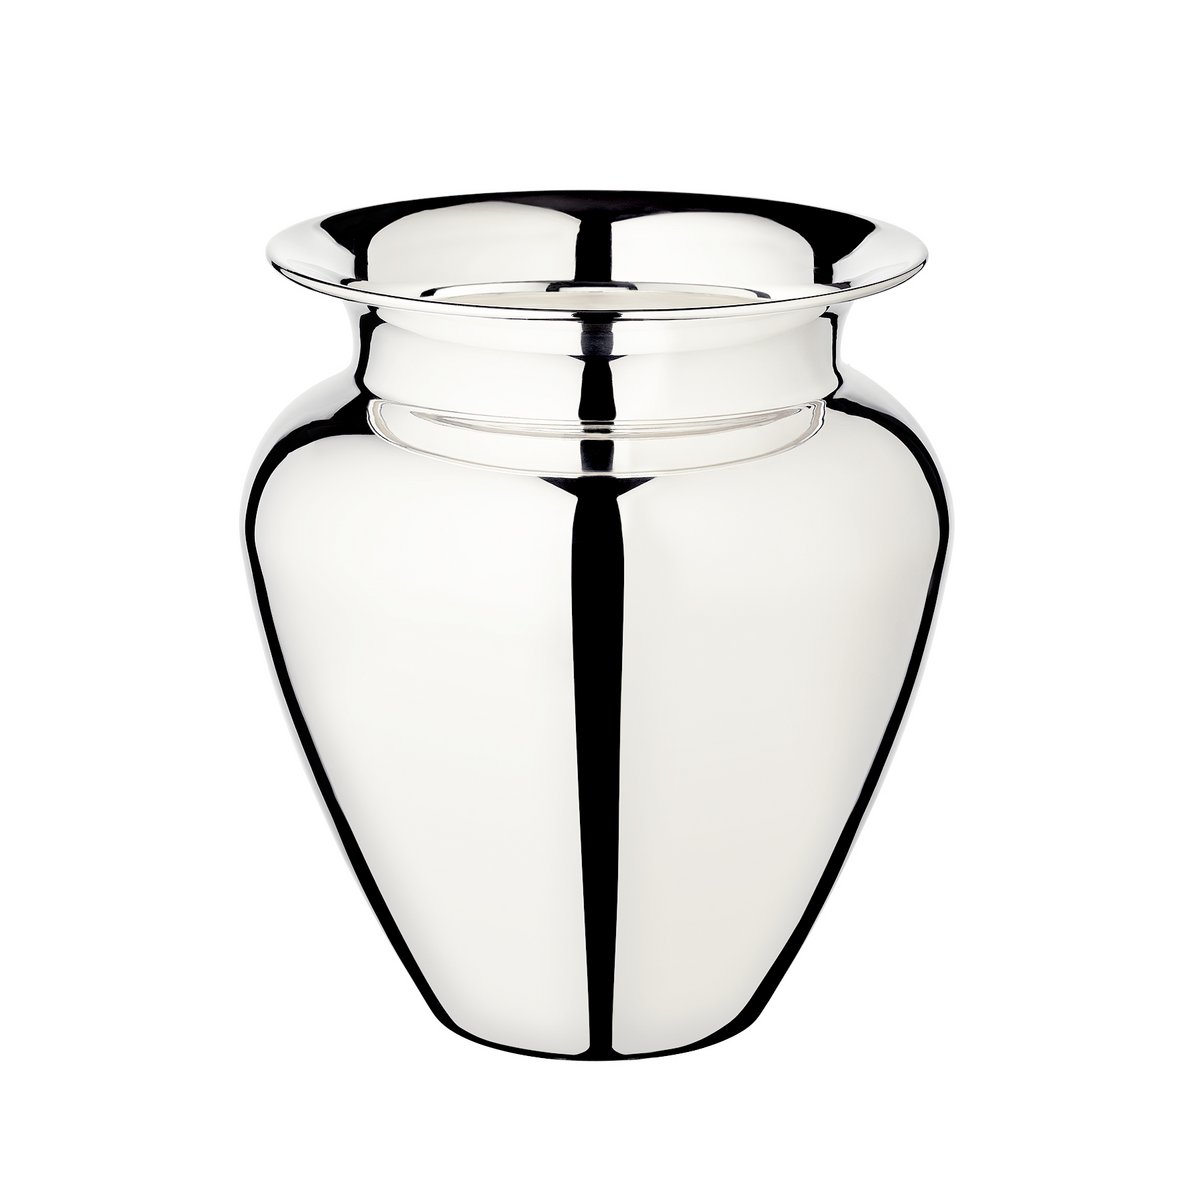 EDZARD Vase Antonia, schwerversilbert, Höhe 26 cm, Durchmesser 23 cm, Öffnung Durchmesser 15 cm